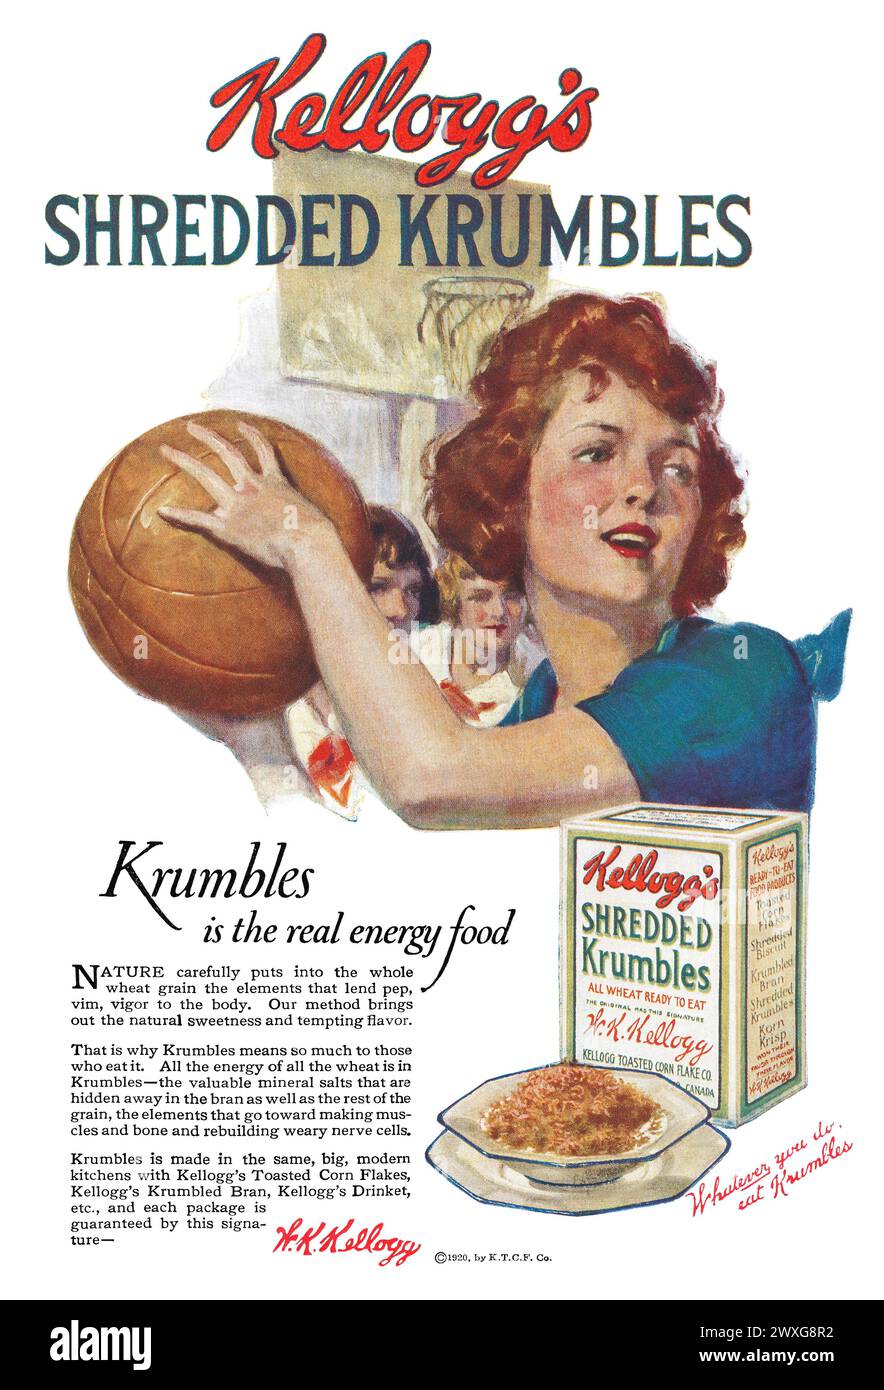 1920 US-Werbung für Kelloggs Shredded Krumbles Frühstückszerealien. Stockfoto